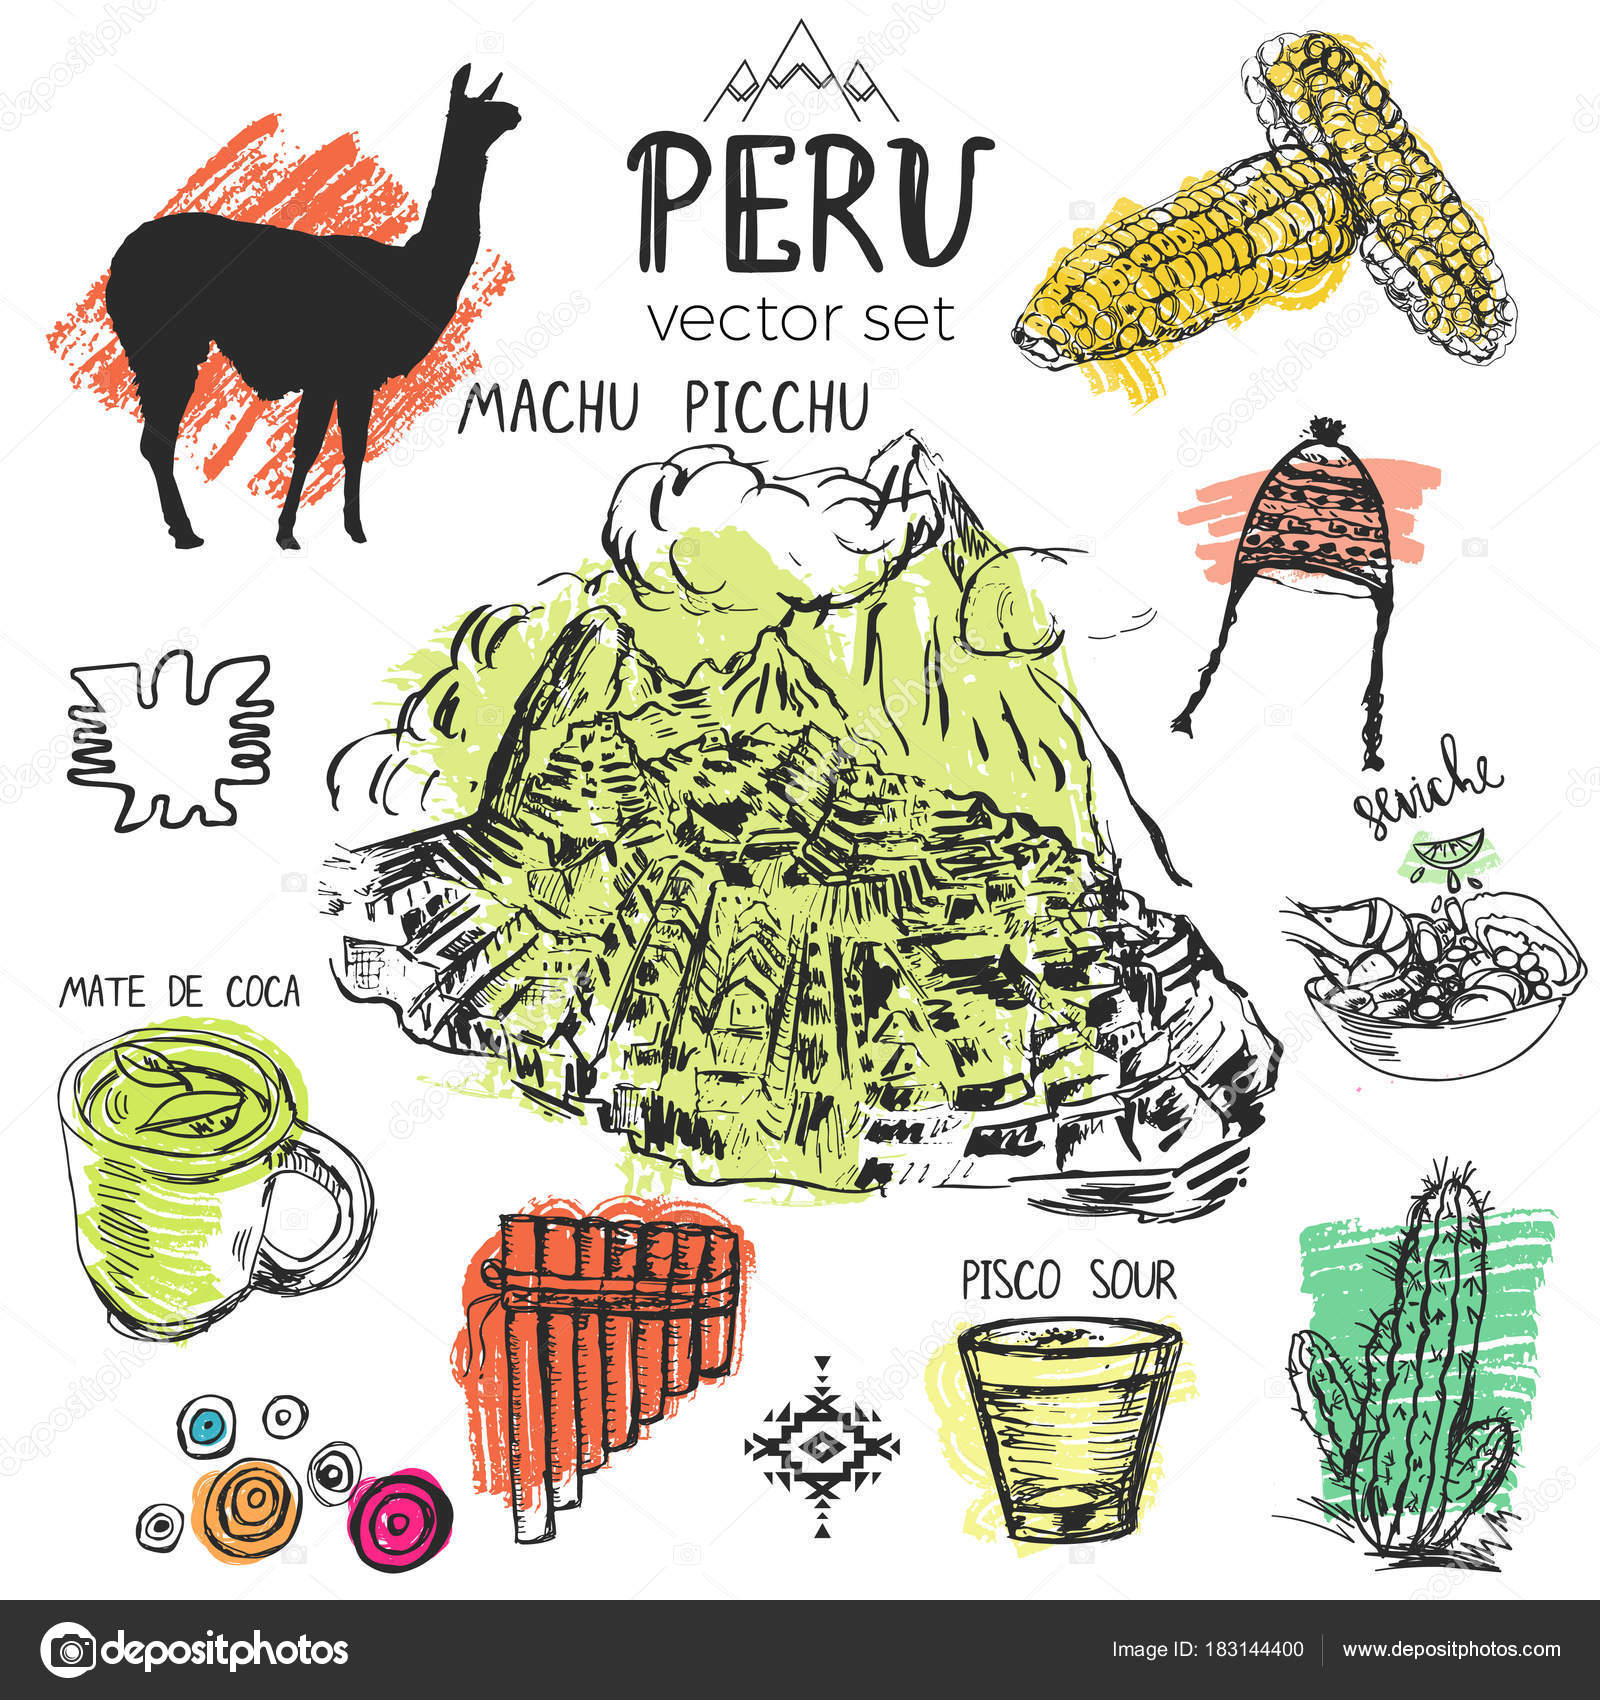 Perú imágenes de stock de arte vectorial | Depositphotos